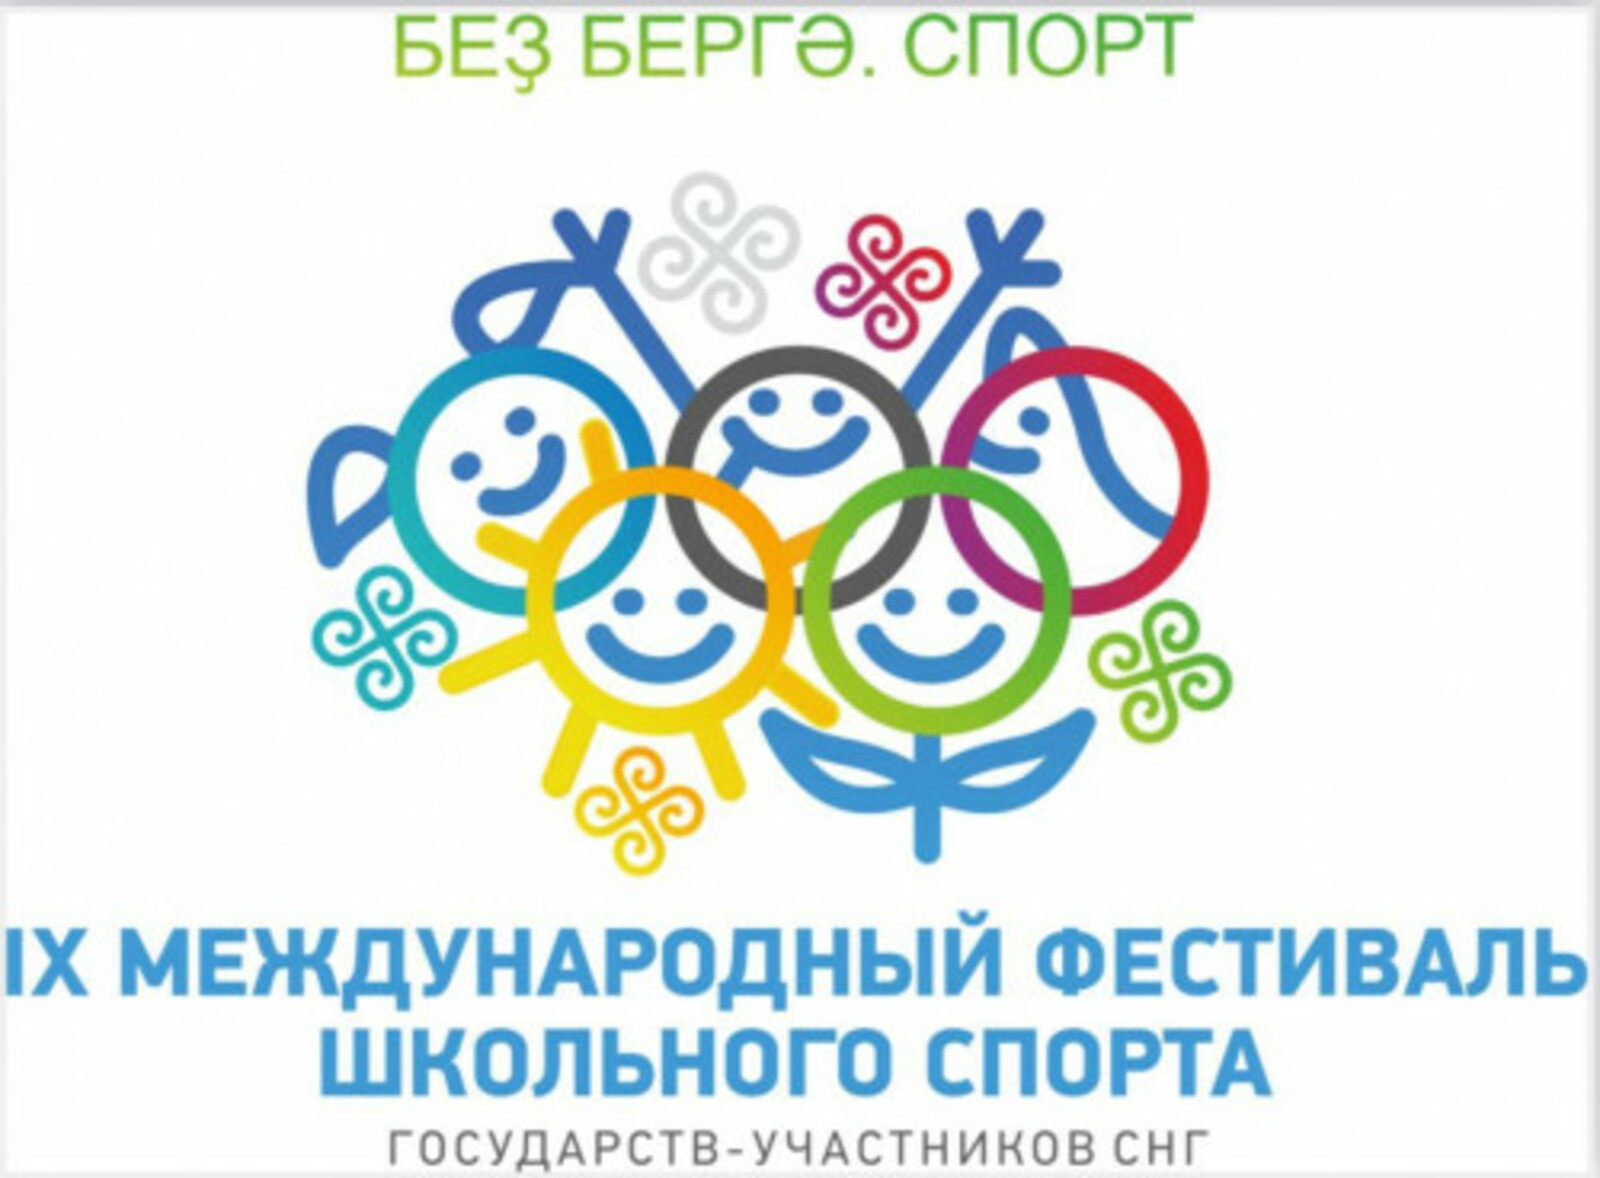 Международный фестиваль школьного спорта государств-участников СНГ впервые пройдет в Башкирии